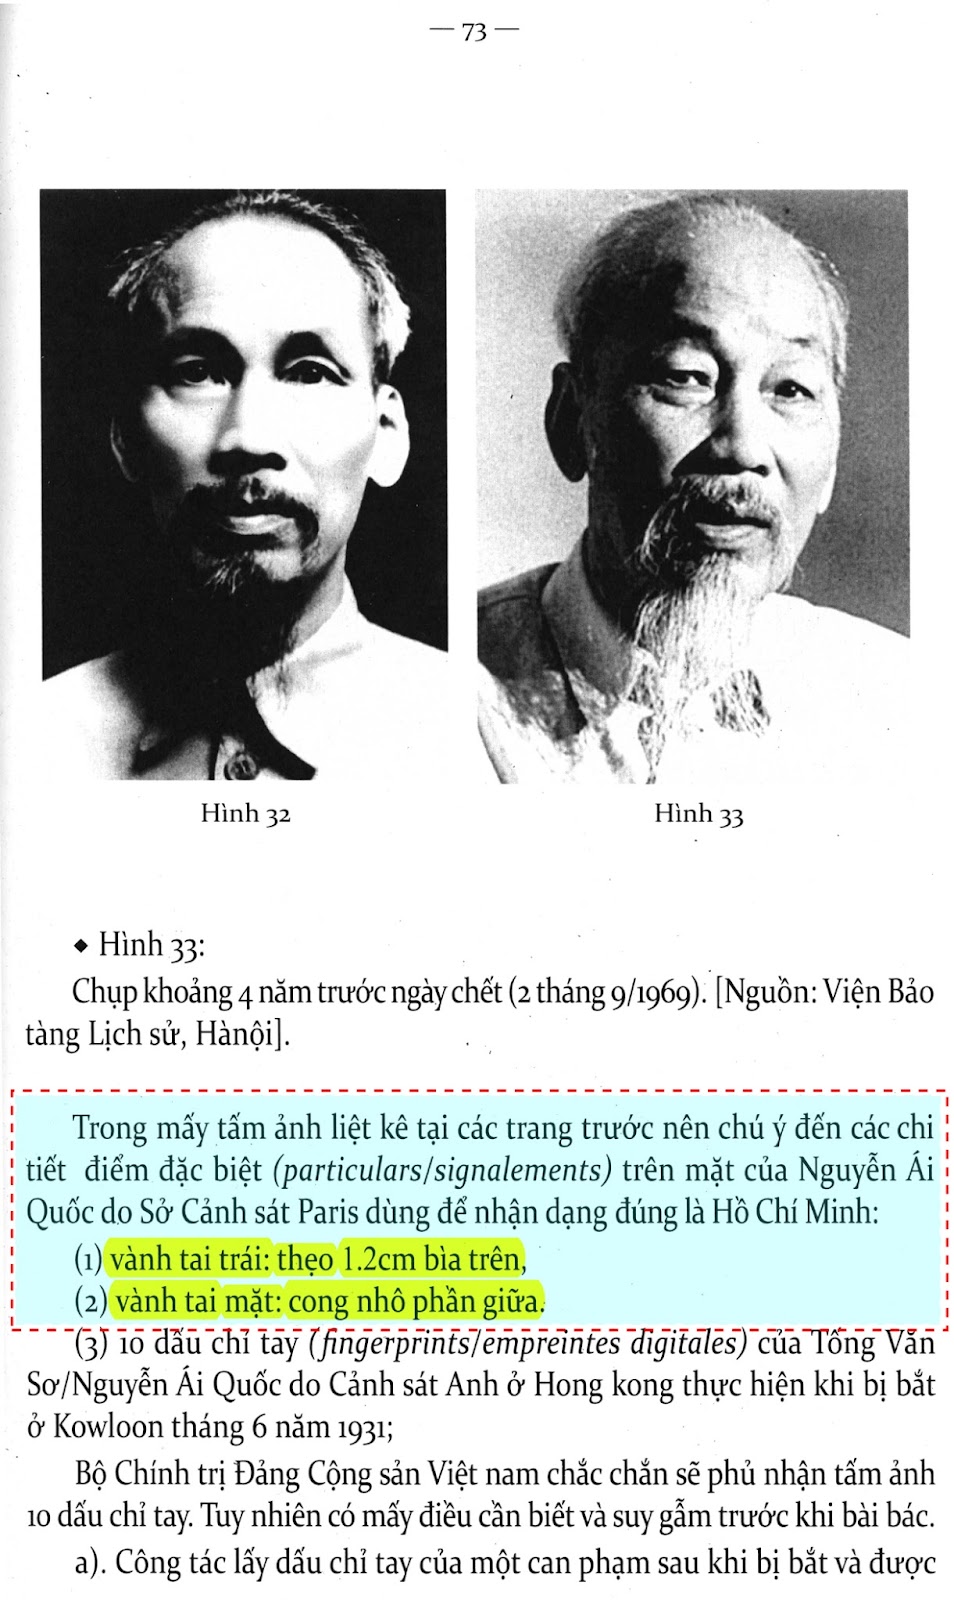 Trang 73 'Hồ Chí Minh cứu nước' của Vy Thanh - highlighted.jpg